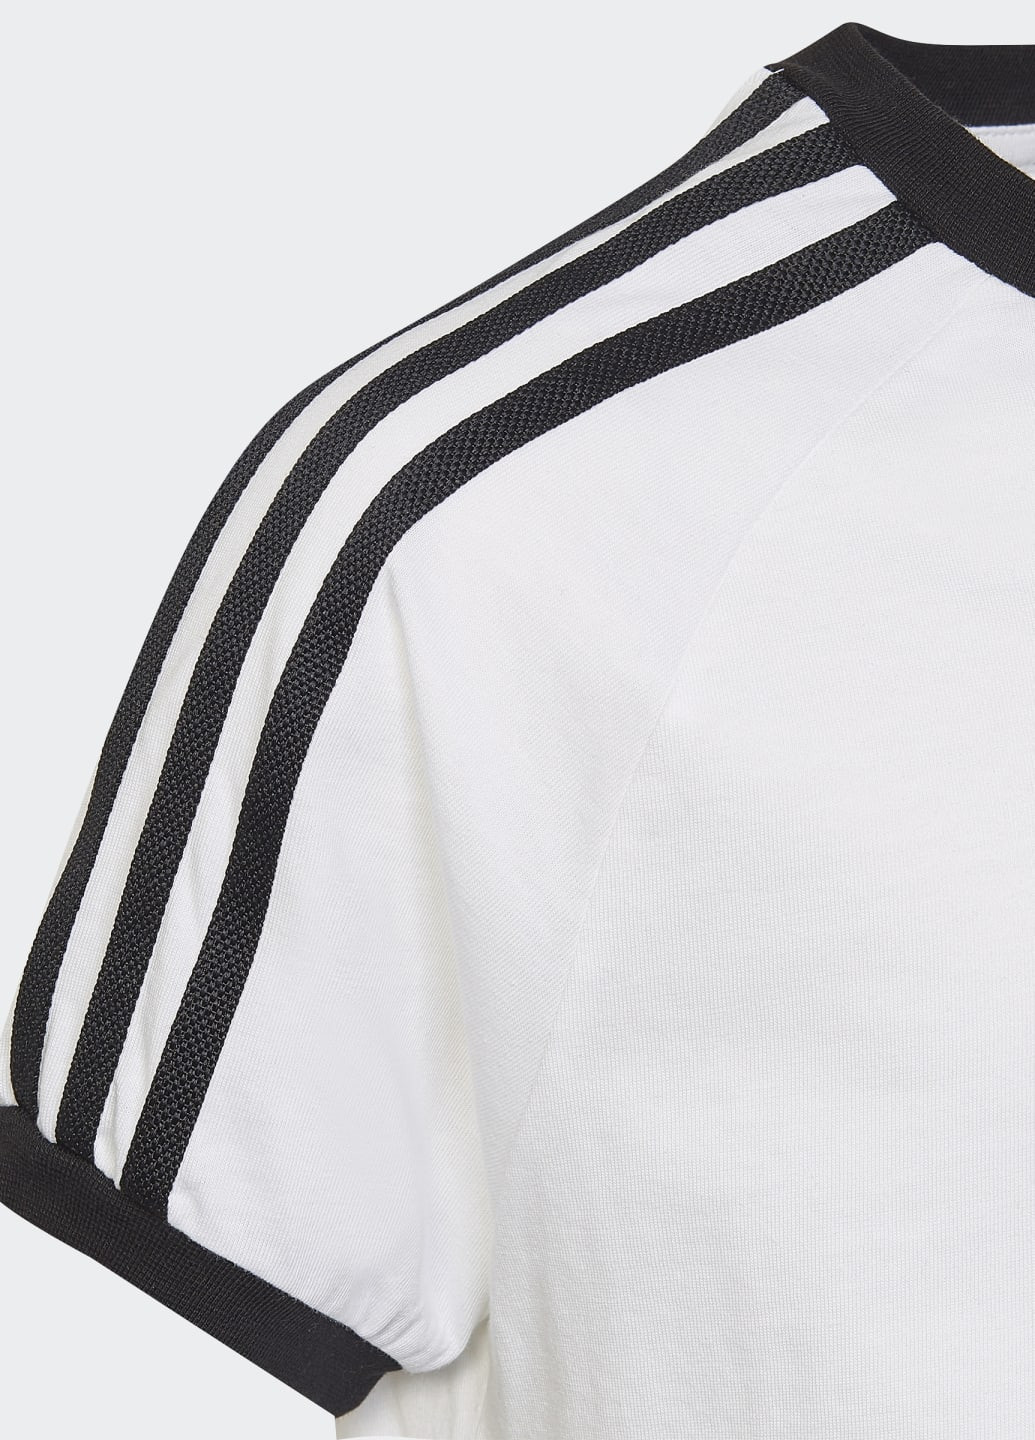 Біла демісезонна футболка adicolor 3-stripes adidas